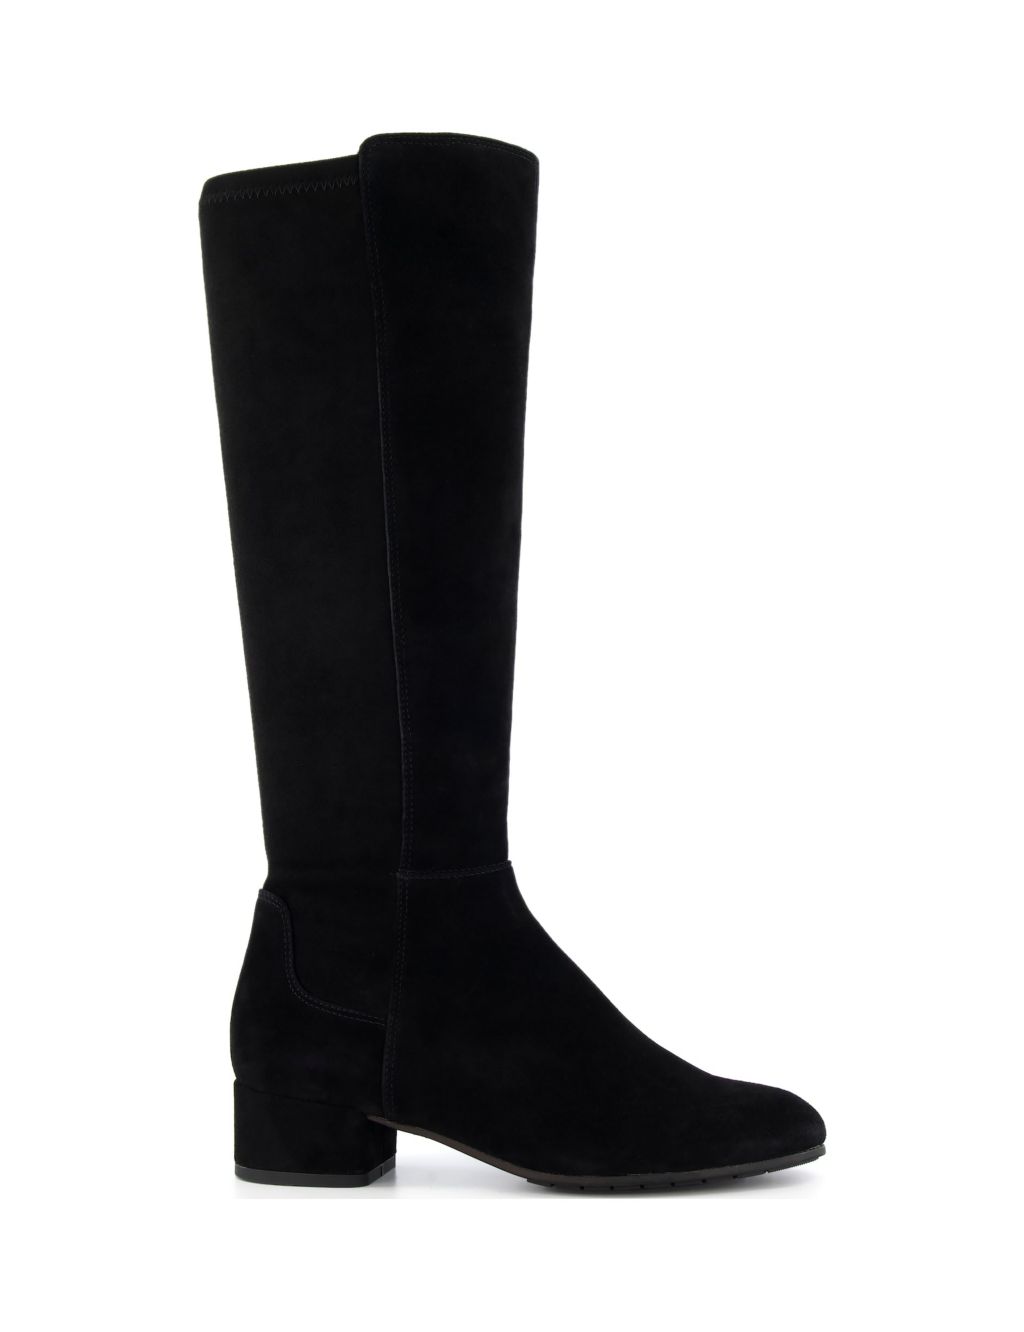 Buy Wide Fit Suede Block Heel Knee High Boots | Dune London | M&S